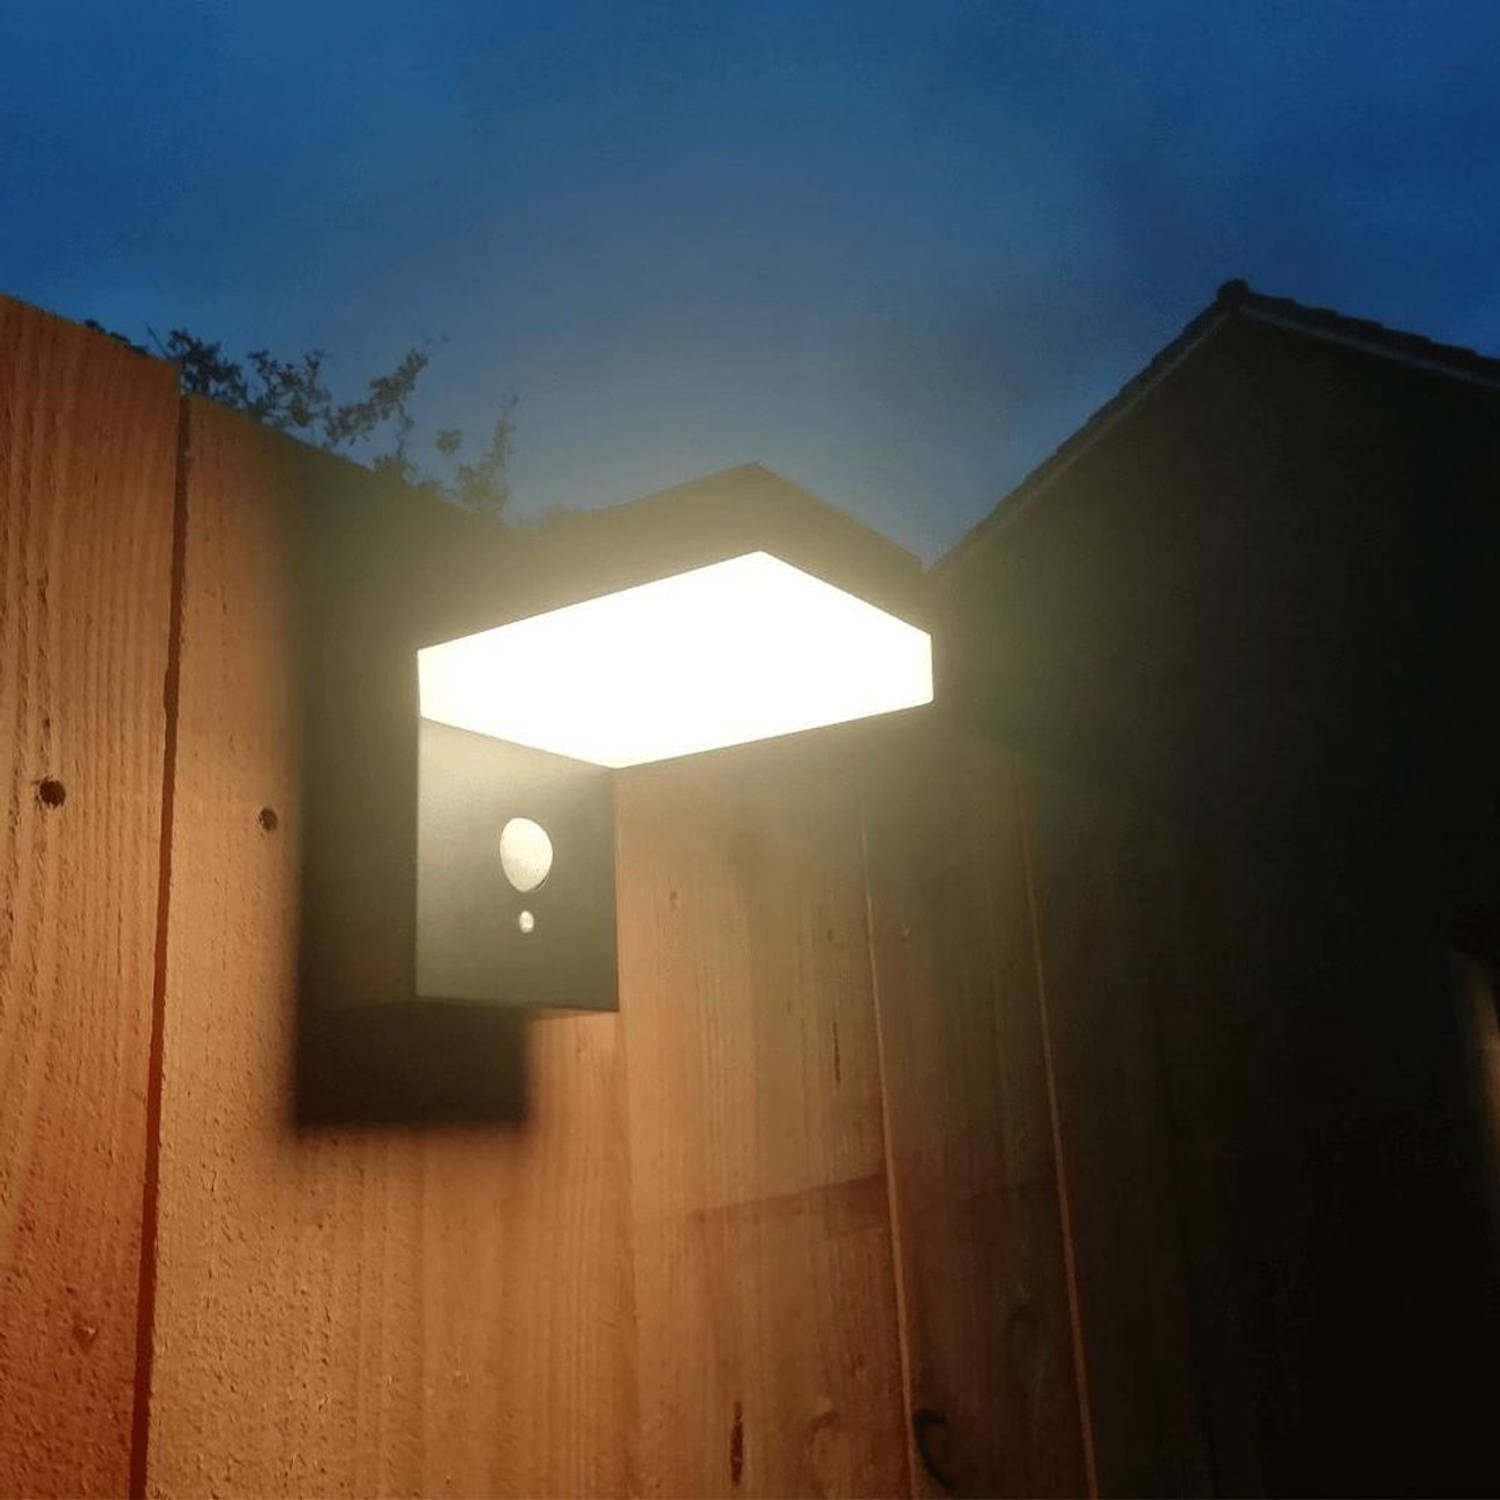 verdieping verloving echo Solar wandlamp buiten 'Oslo' - Warm wit licht - Met bewegingssensor -  Wandlamp op zonne-energie | Blokker